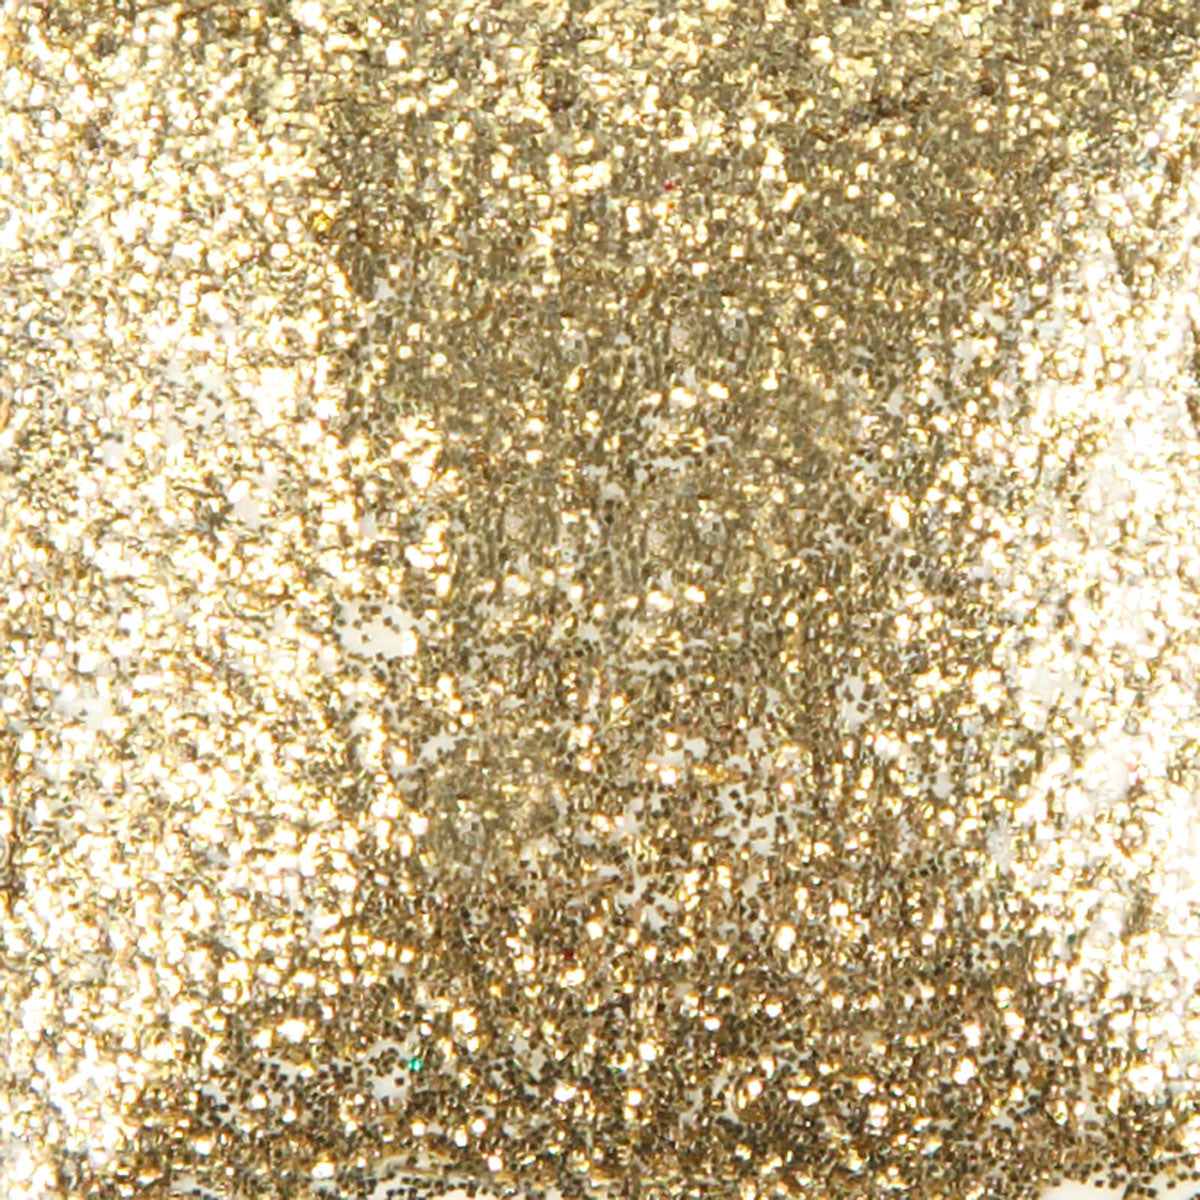 Duncan SG882 Glittering Gold Sparklers Brush-On Glitter, 2 oz